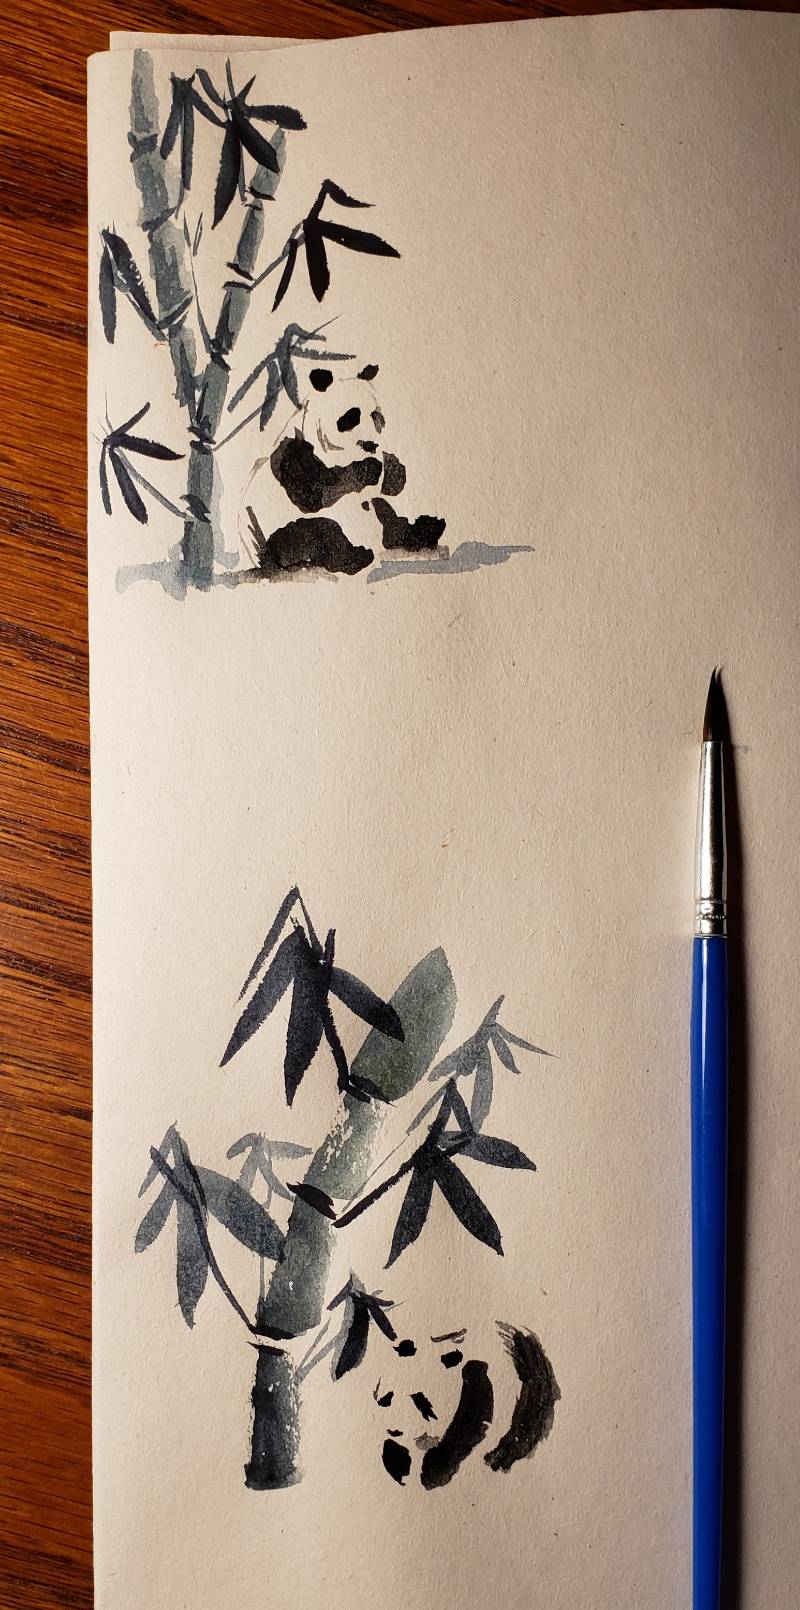 Panda drawings